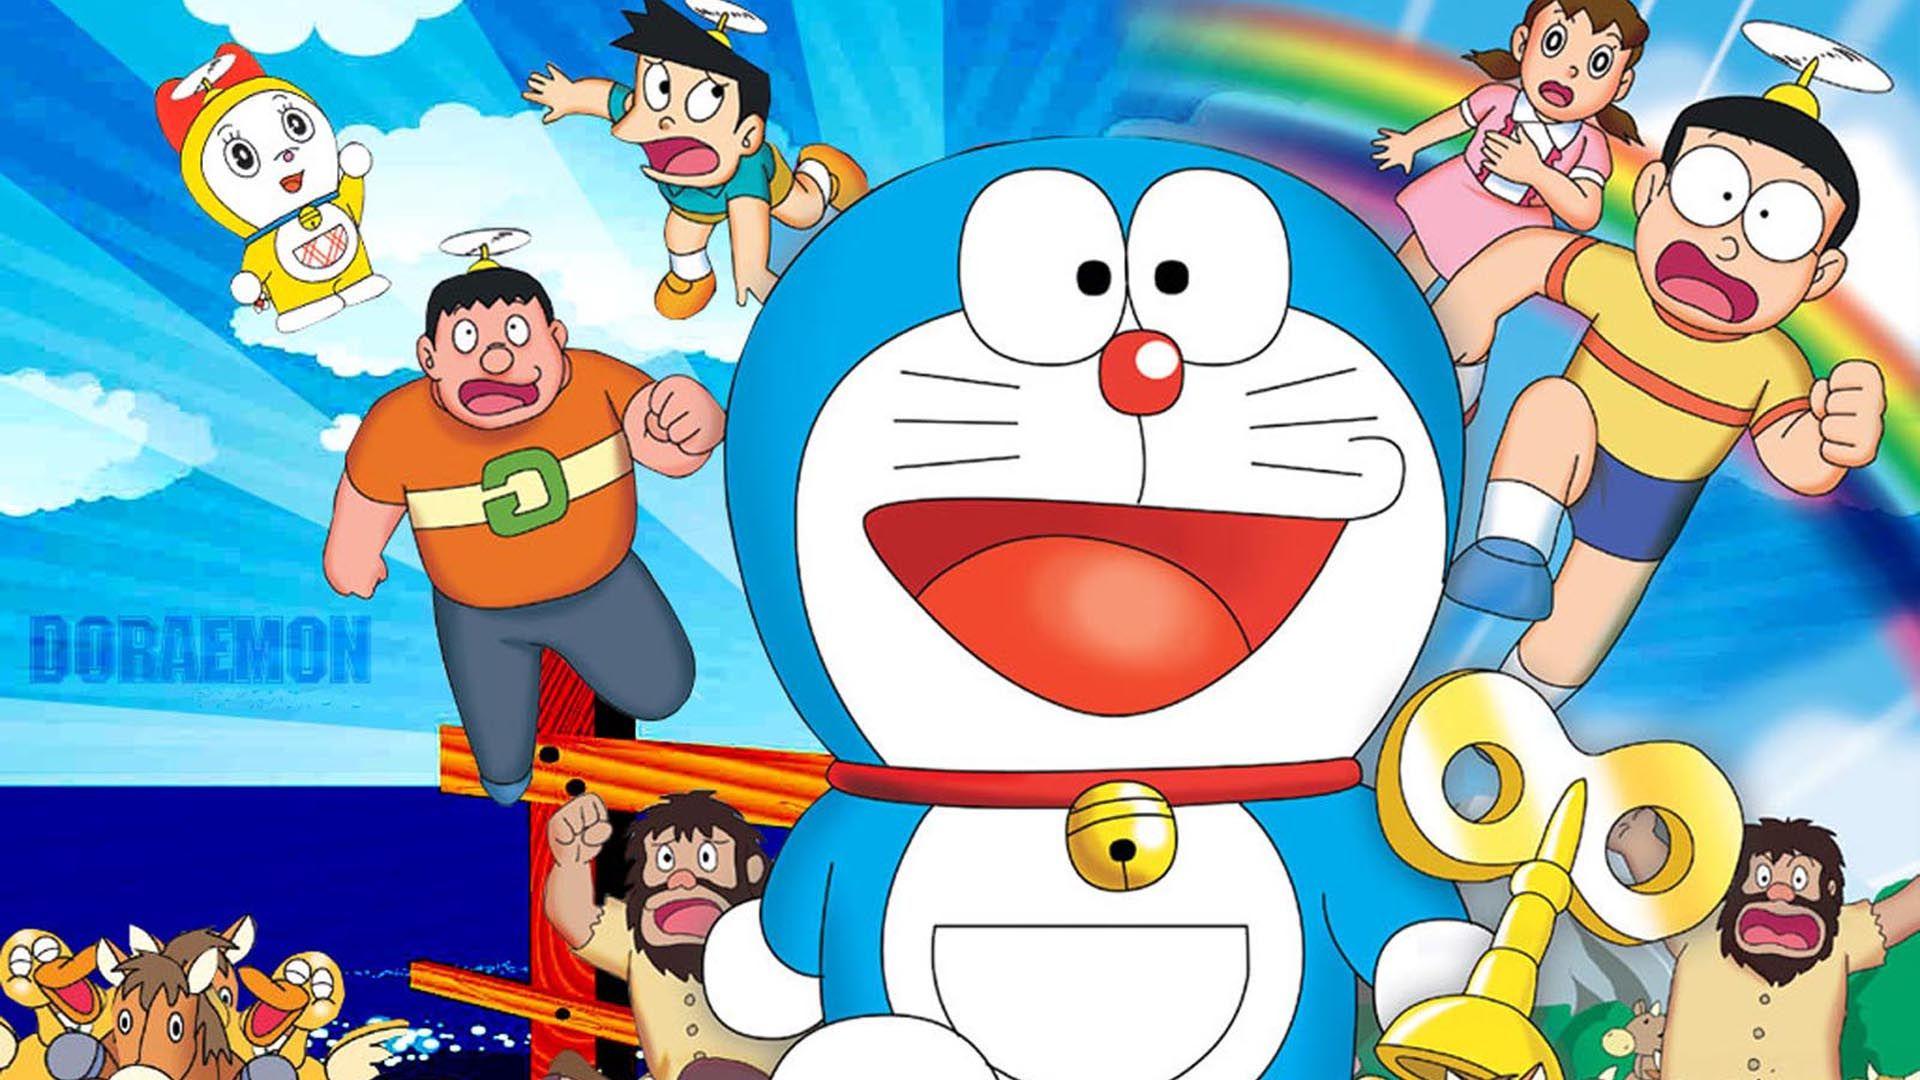 Nếu bạn đang tìm kiếm một hình ảnh nền Doraemon đặc biệt để trang trí máy tính của mình, thì hãy khám phá bức ảnh nền Doraemon đang trông rất thú vị này. Với các hình ảnh màu sắc đẹp mắt và vui nhộn, bức ảnh sẽ làm máy tính của bạn trở nên thú vị và độc đáo hơn.